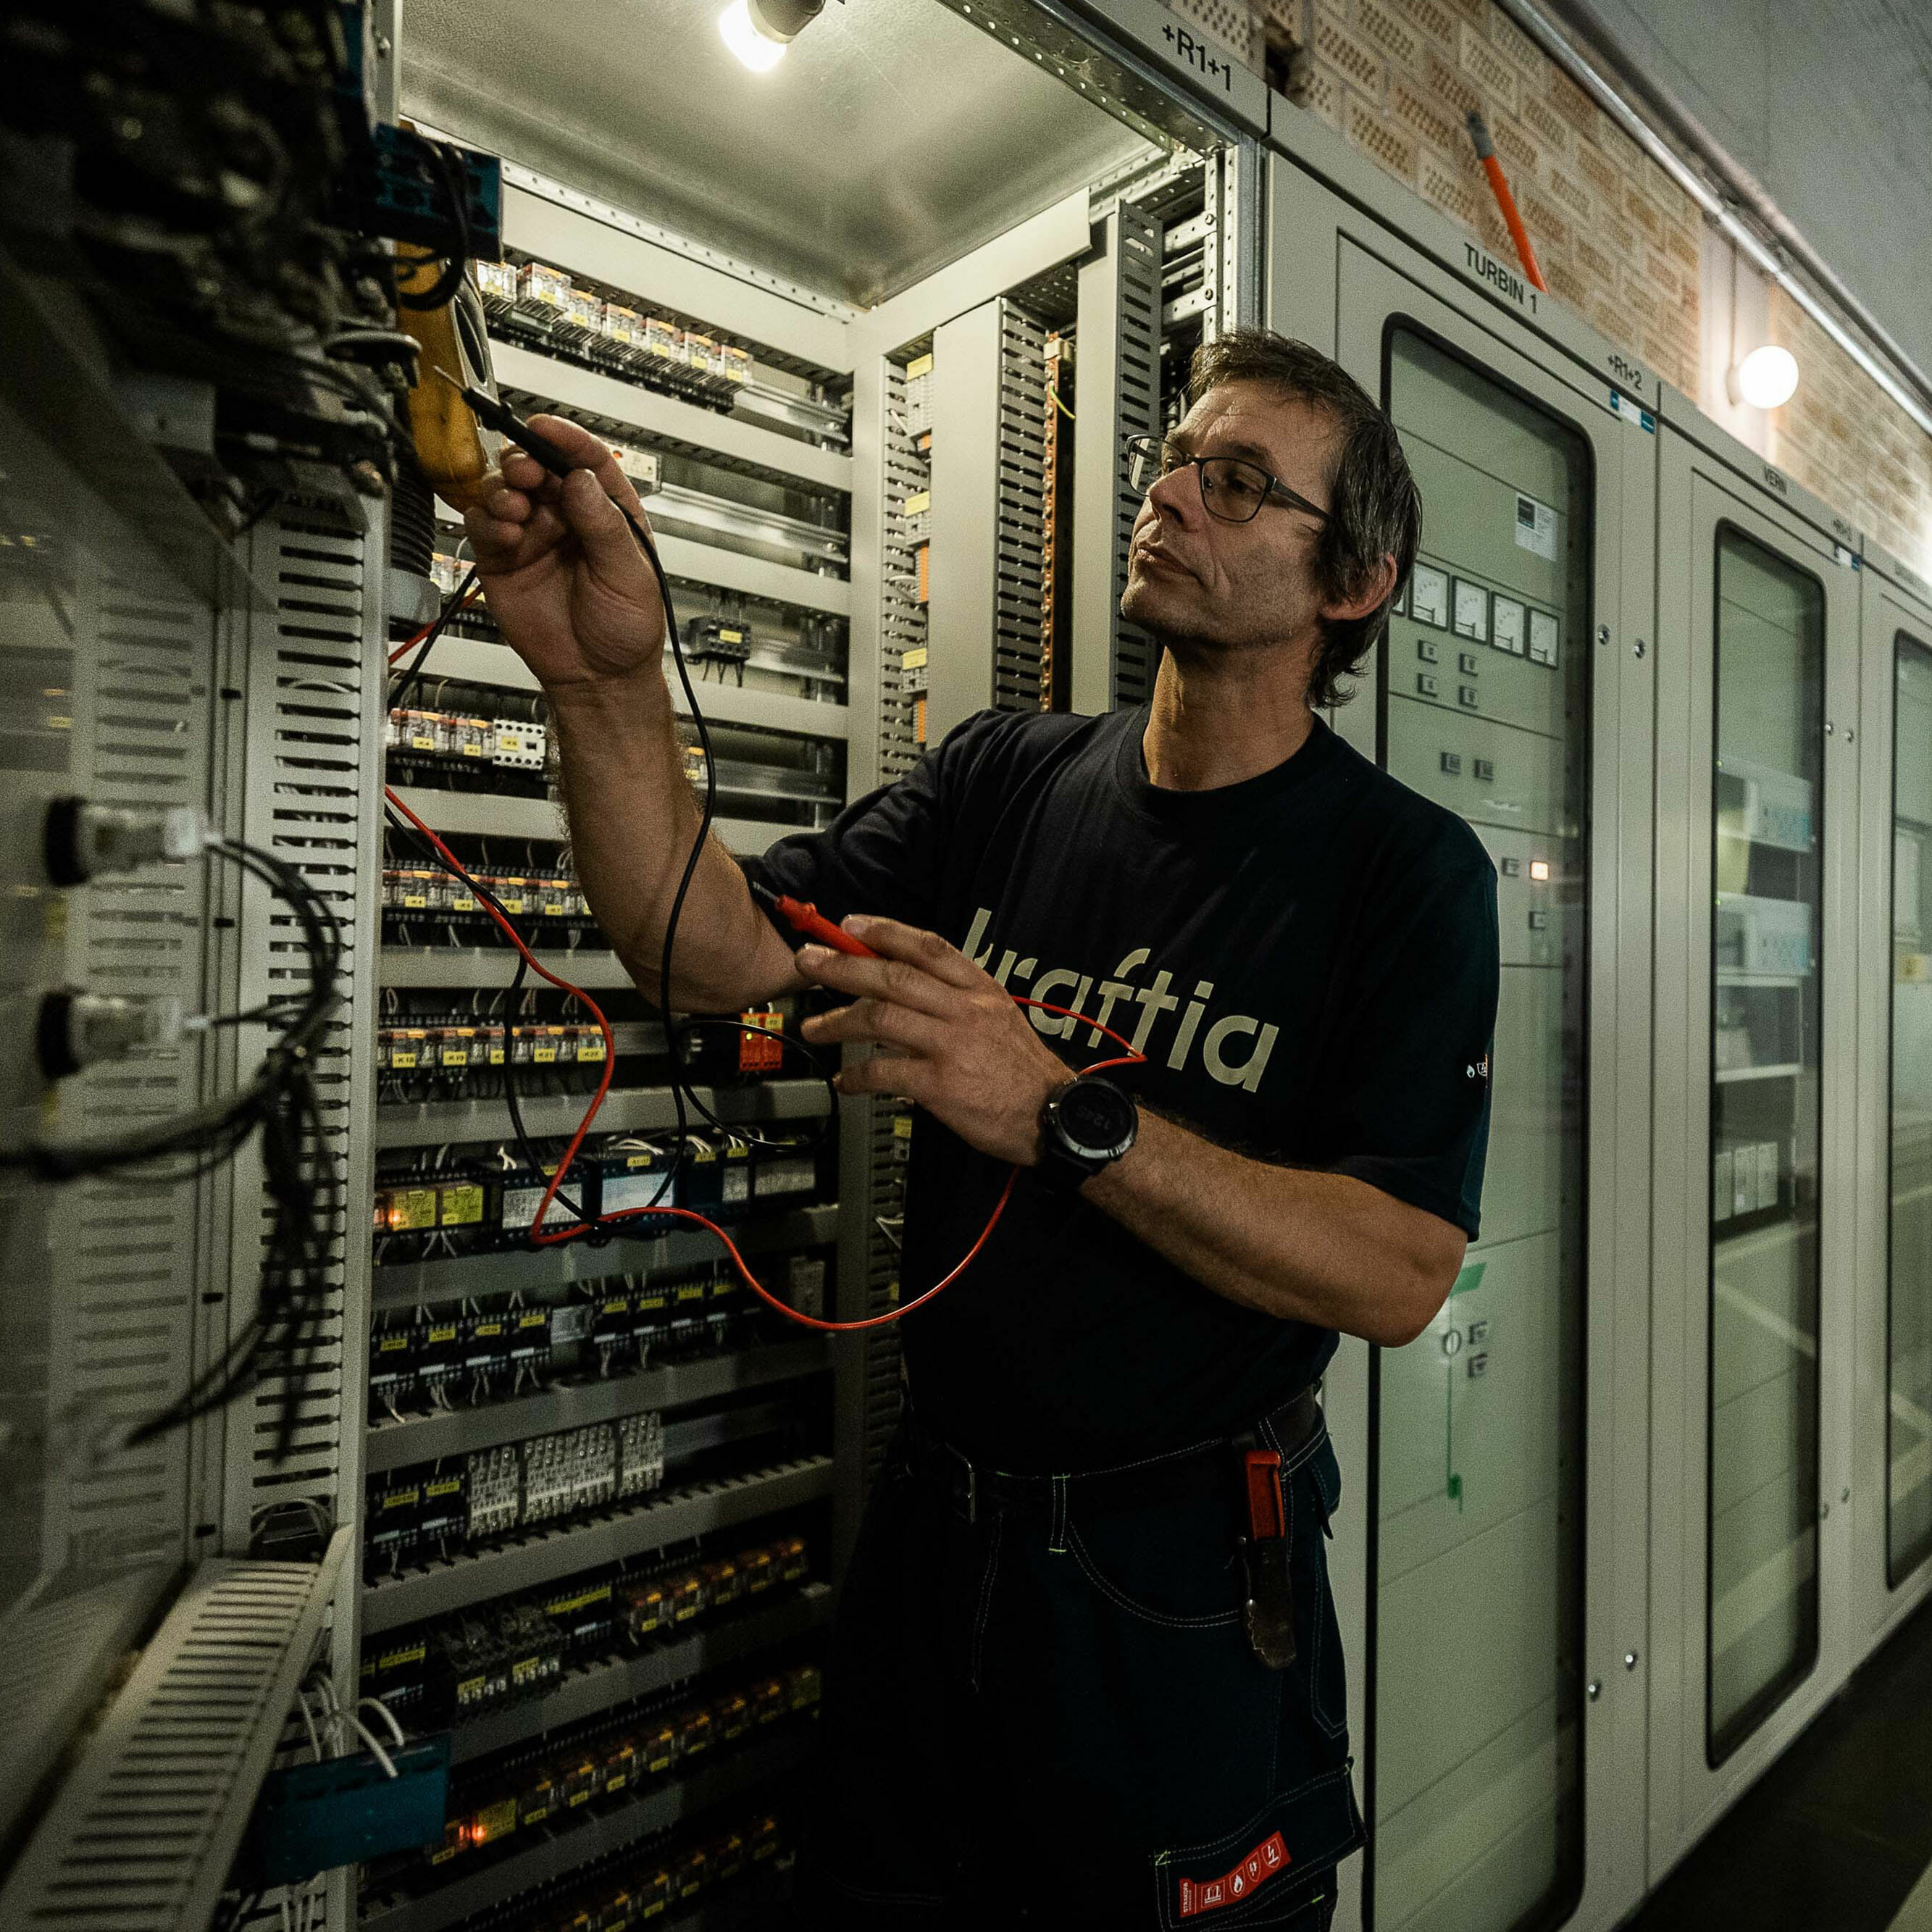 Foto: Person som arbeider med vedlikehold av elektriske kontrollpaneler.